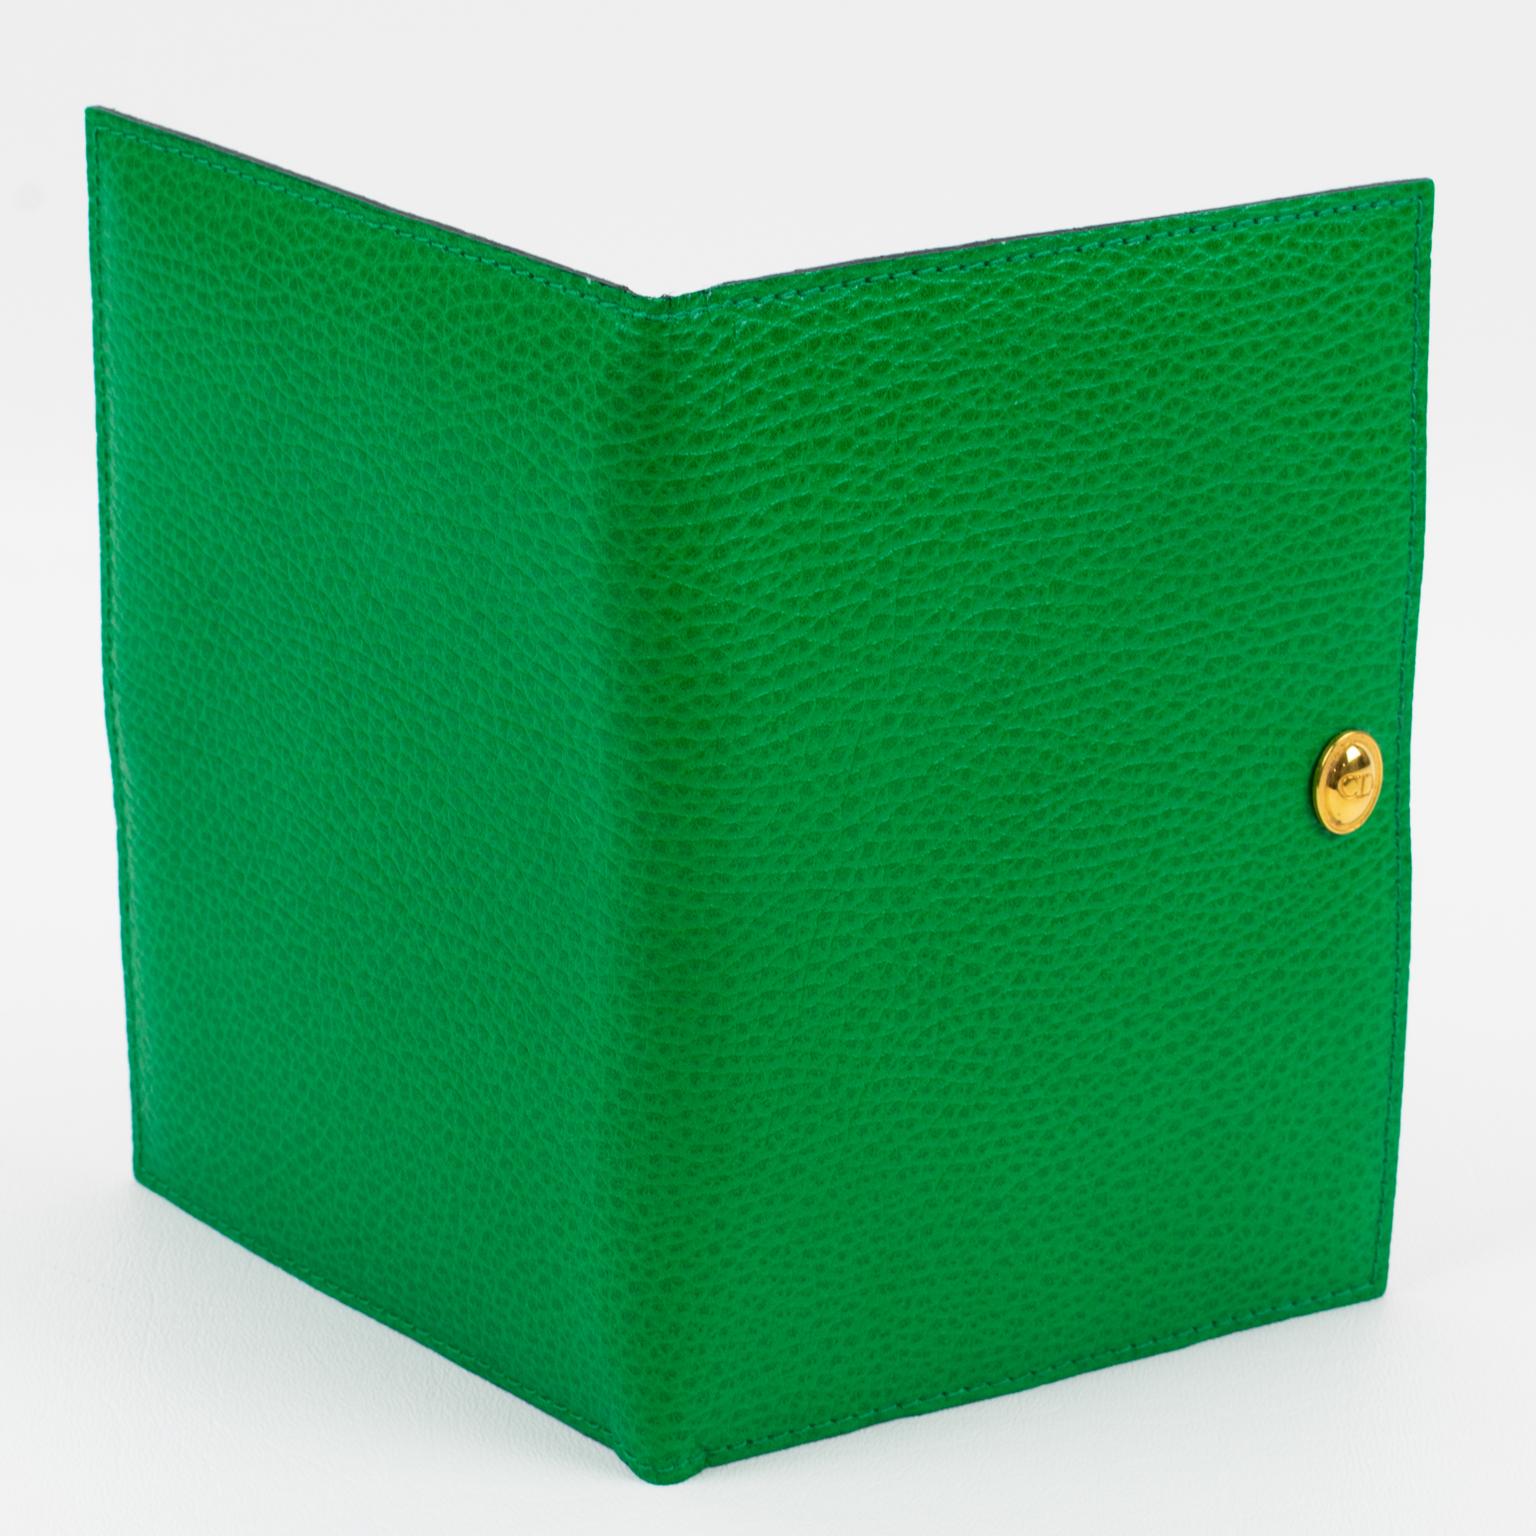 Christian Dior entwarf diesen raffinierten Bilderrahmen aus Leder in den 1990er Jahren für seine Home Collection'S. Das schöne hellgrüne Leder mit Muster ist rundum handgenäht. Dieser Klapprahmen in Brieftaschenform mit doppelter Ansicht eignet sich